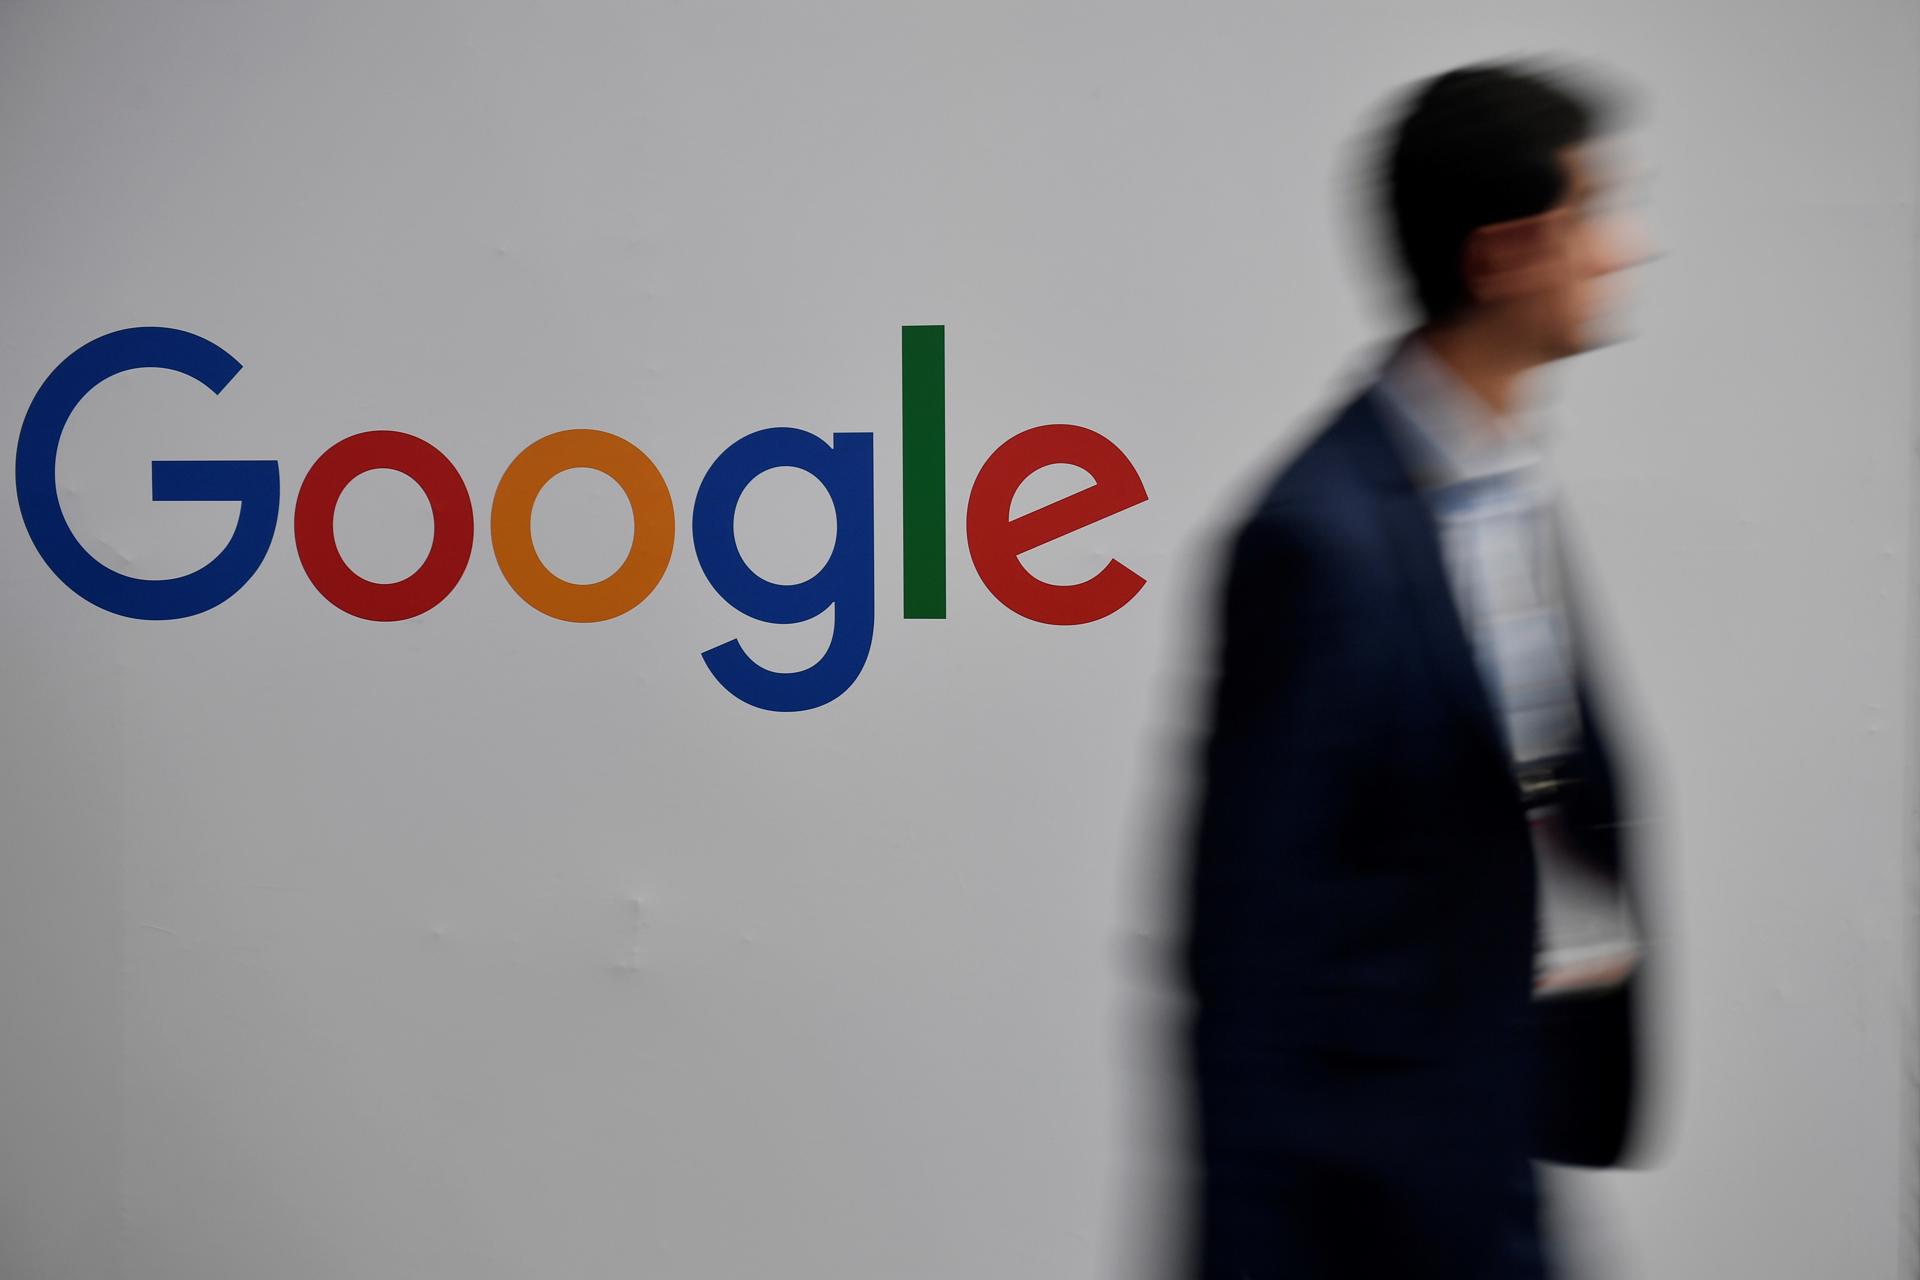 Vista de un hombre que pasa frente al logo de Google, en una fotografía de archivo. EFE/Julien de Rosa